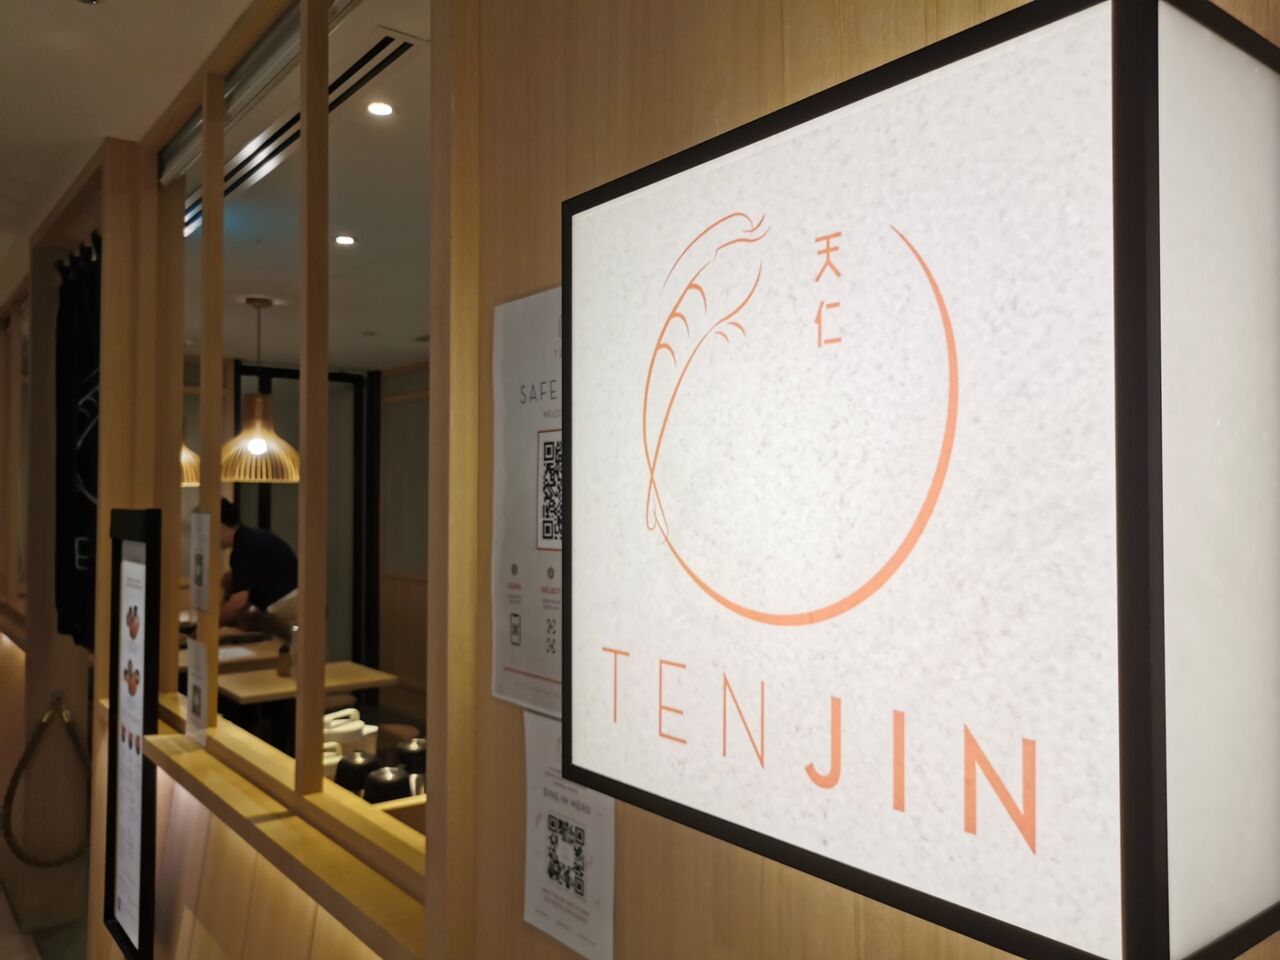  Tenjin 天ぷら シンガポール